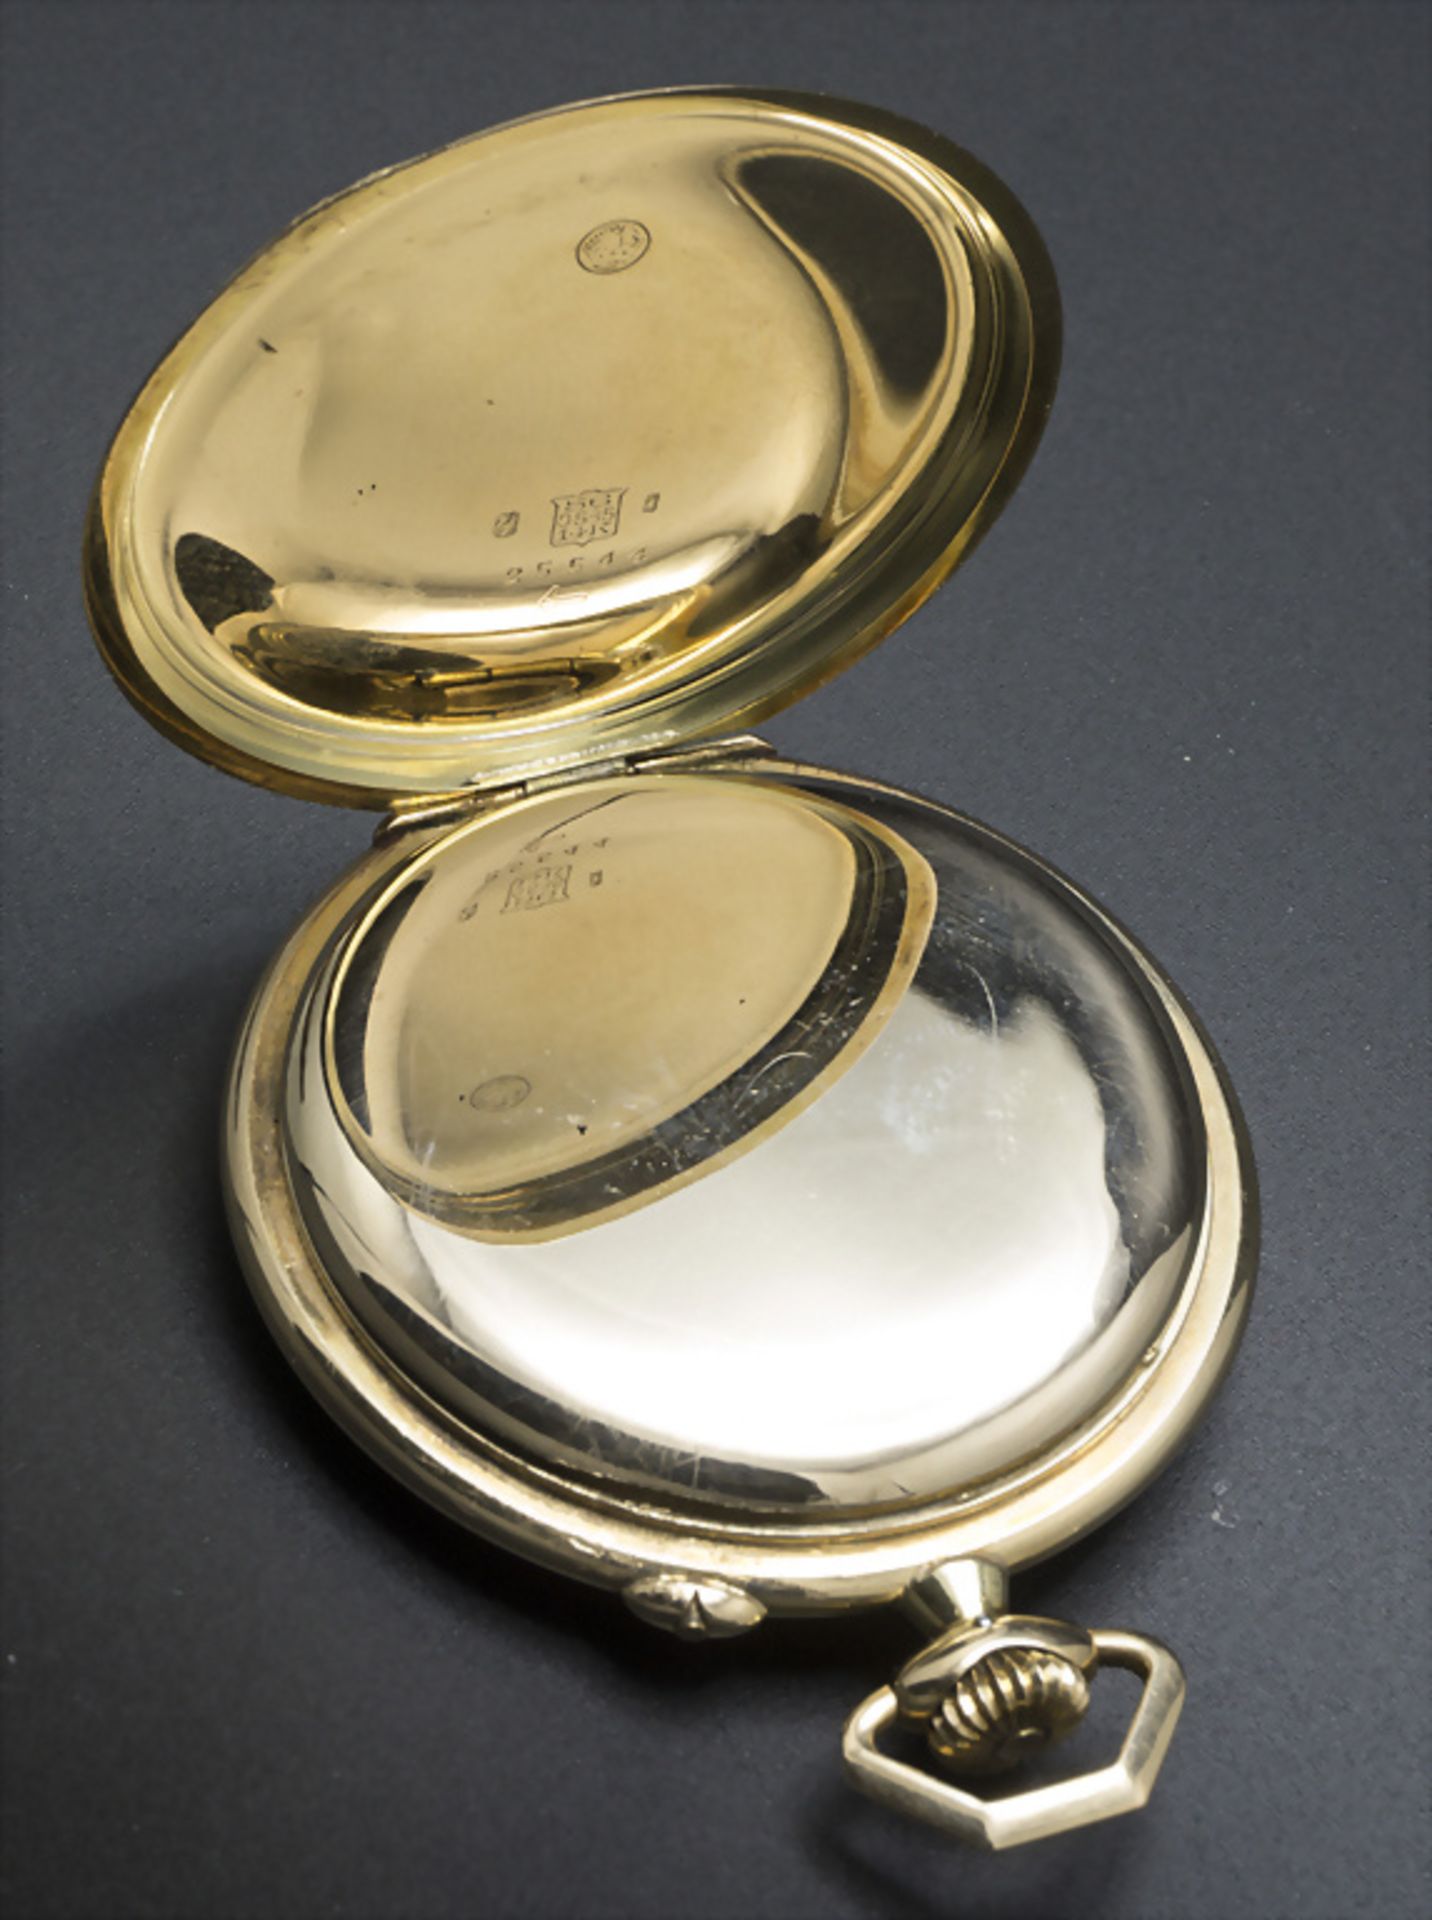 Offene Herrentaschenuhr / A 14k gold pocket watch, J. Assmann, Glashütte in Sachsen, um 1915 - Image 5 of 6